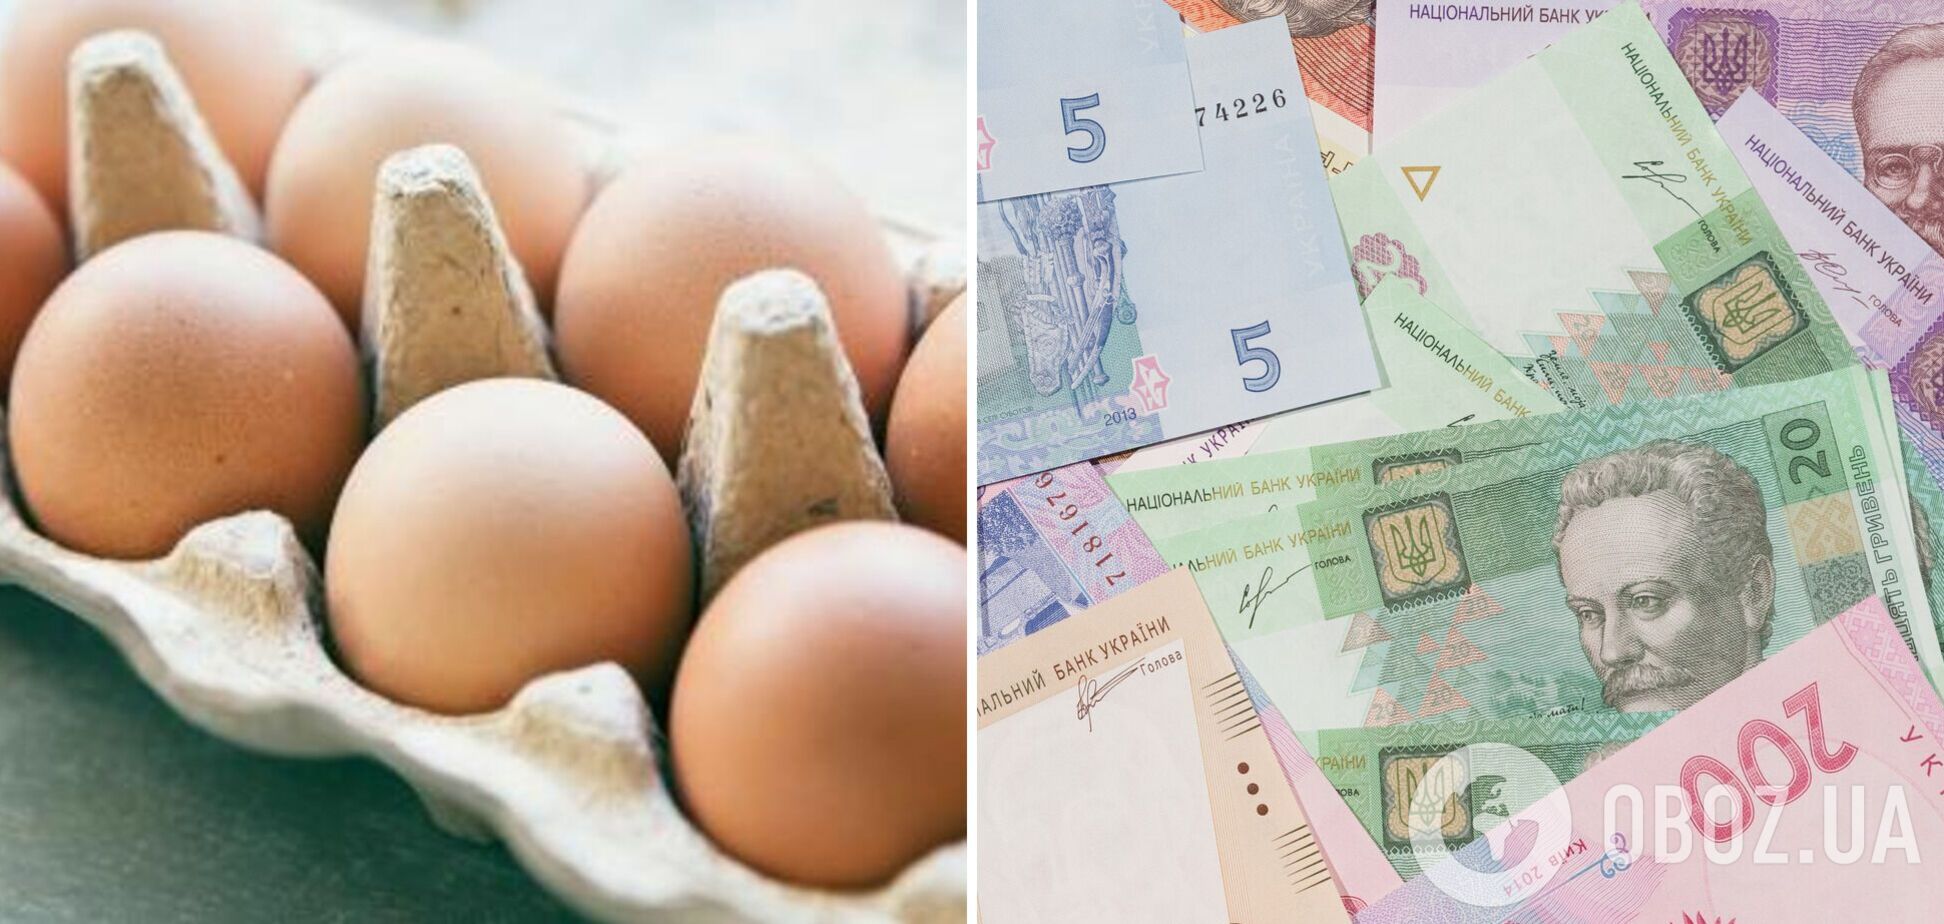 Украинцев известили о скором изменении цен на яйца